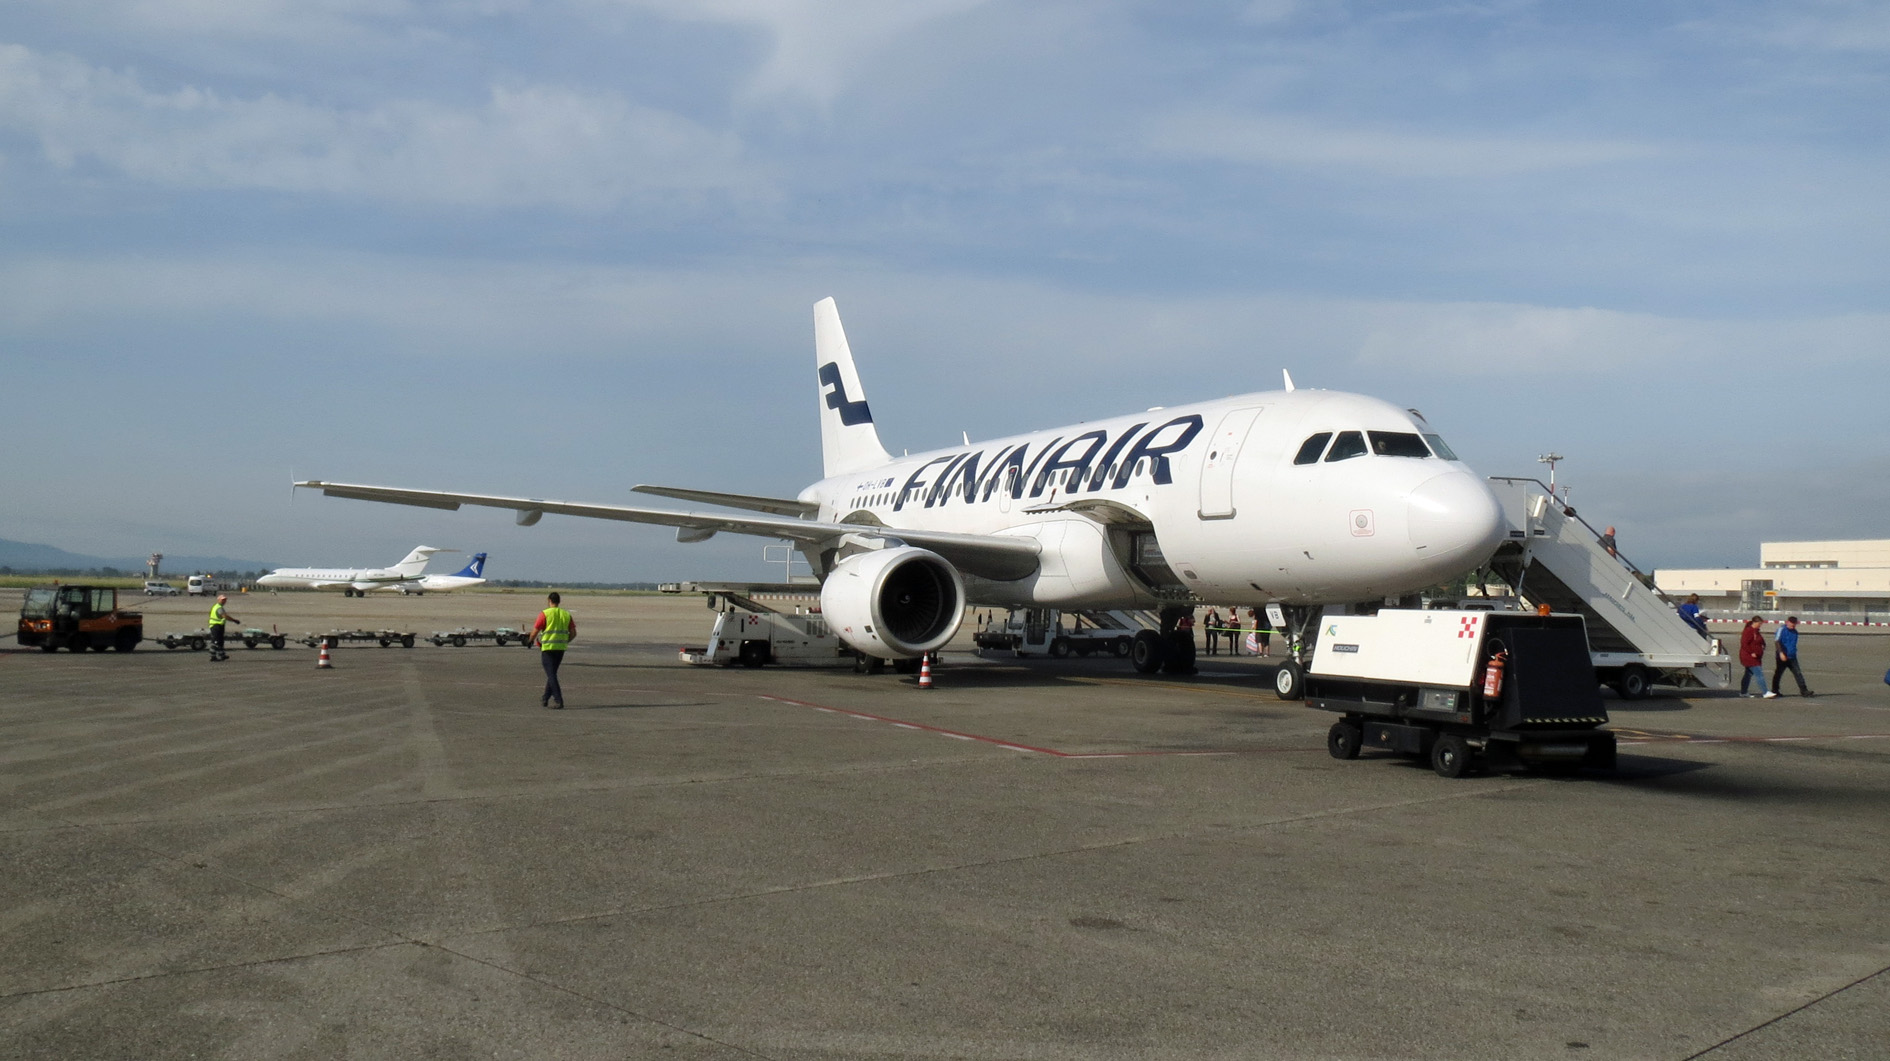 Finnair flight has arrived at Pisa